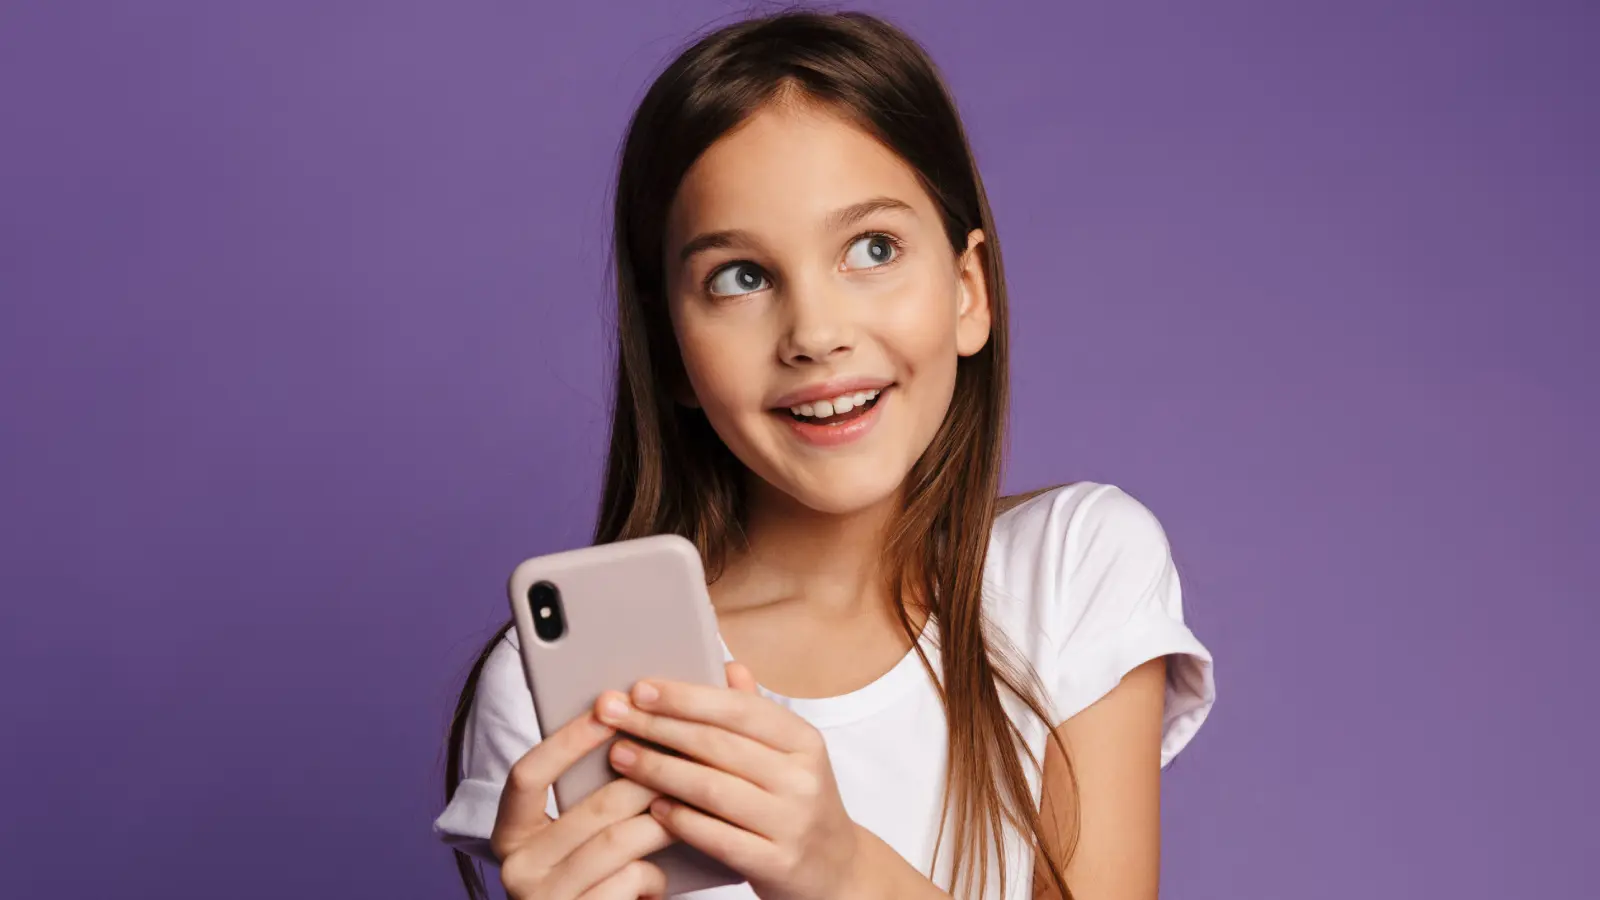 ما العمر المناسب لشراء هاتف لطفلك؟